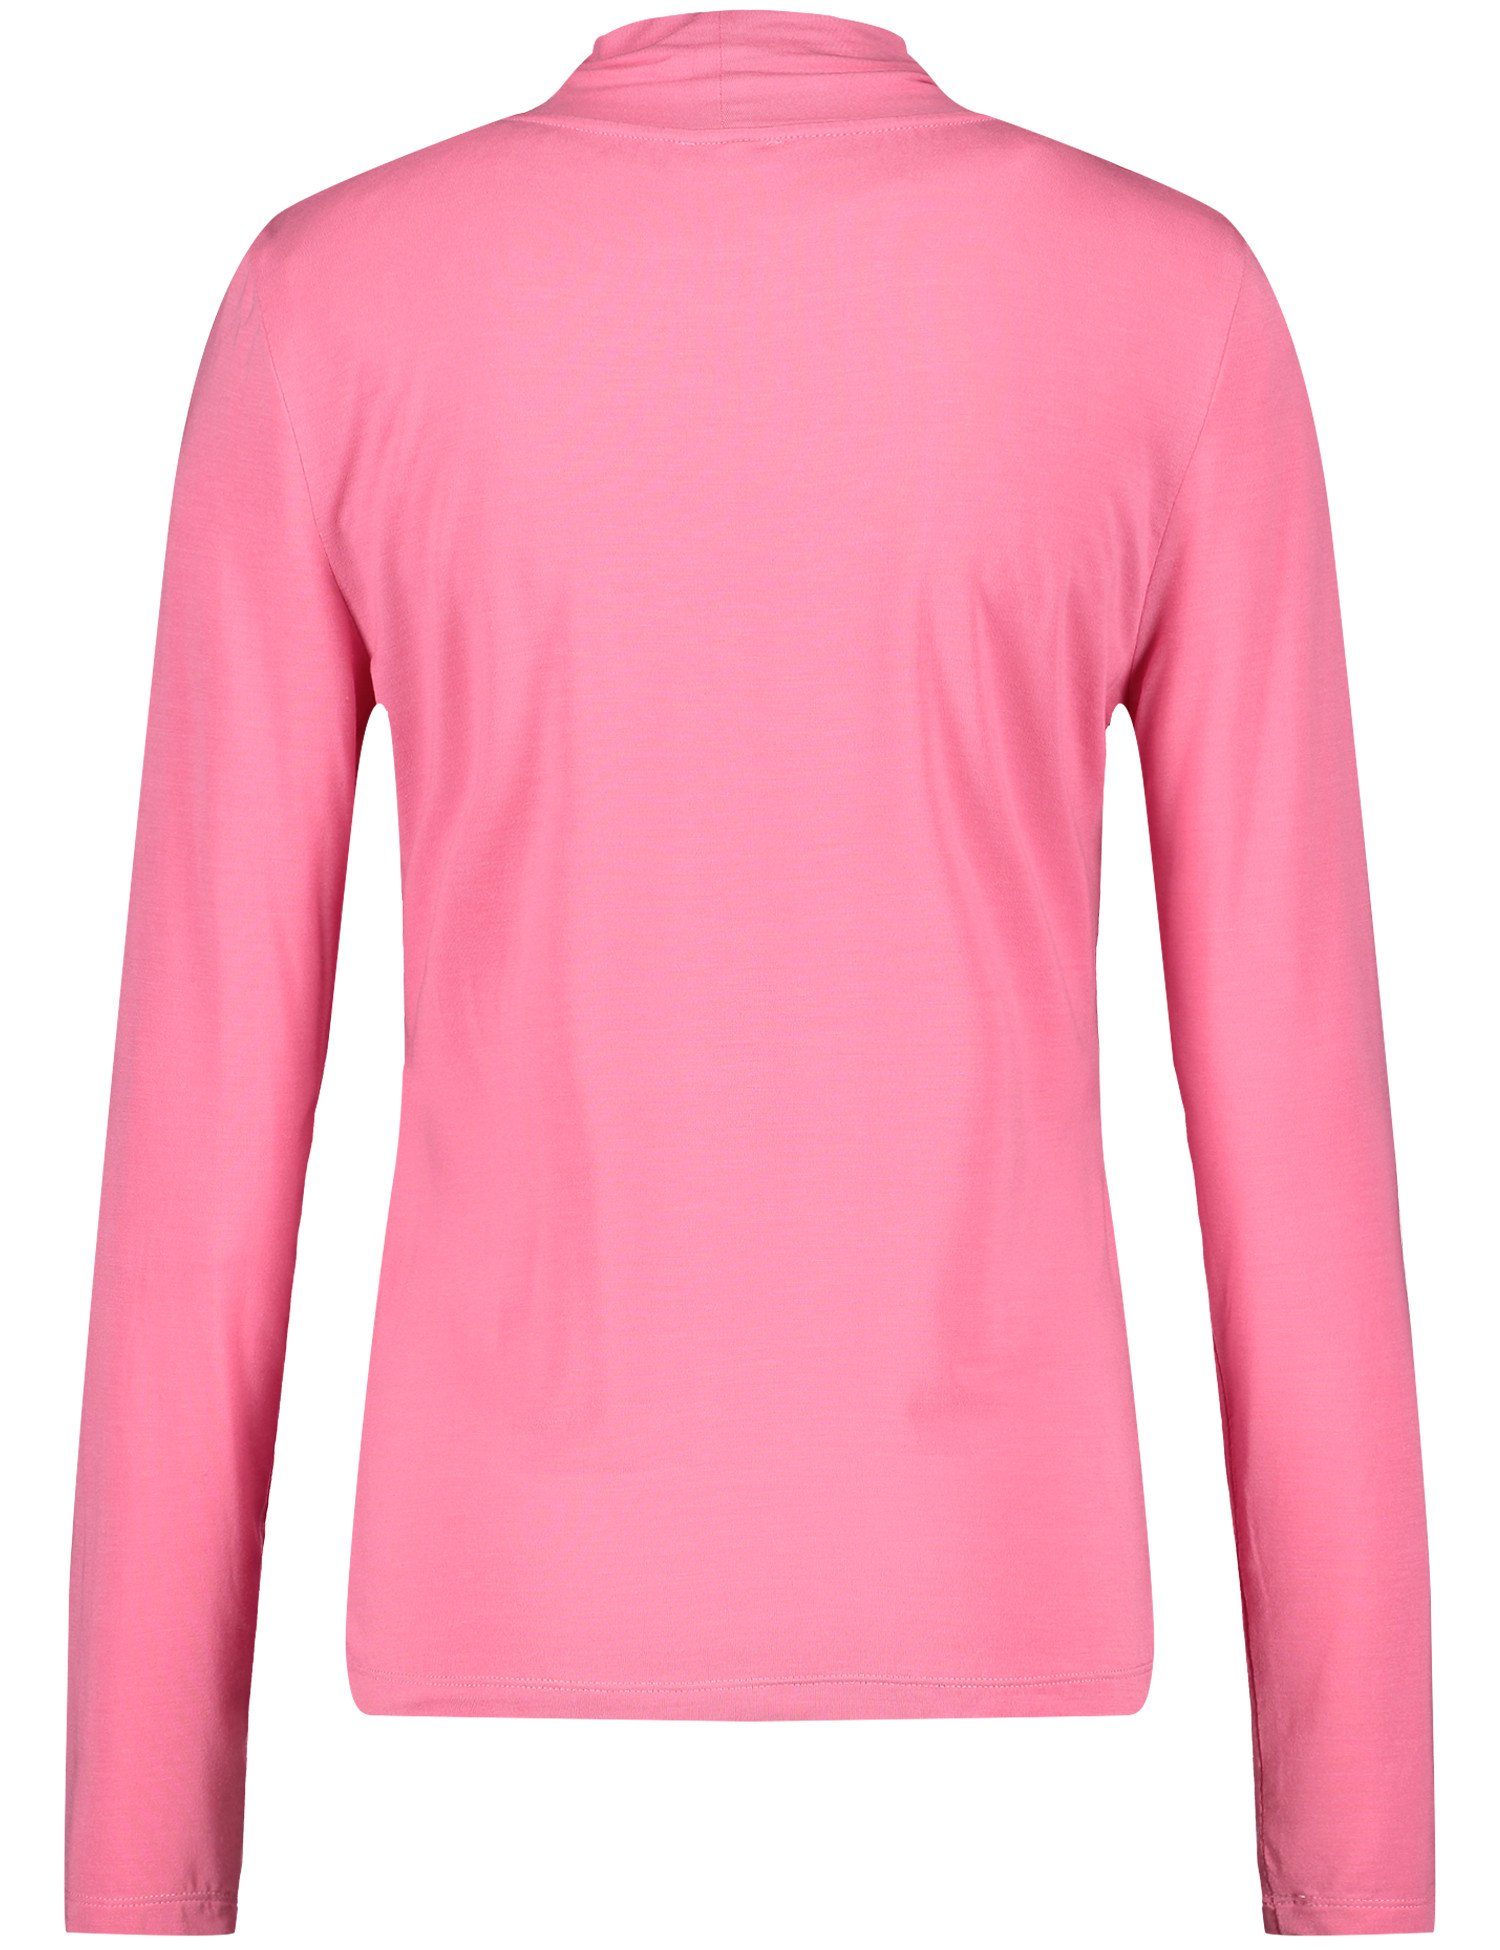 30894 ROSE WEBER GERRY PINK T-Shirt